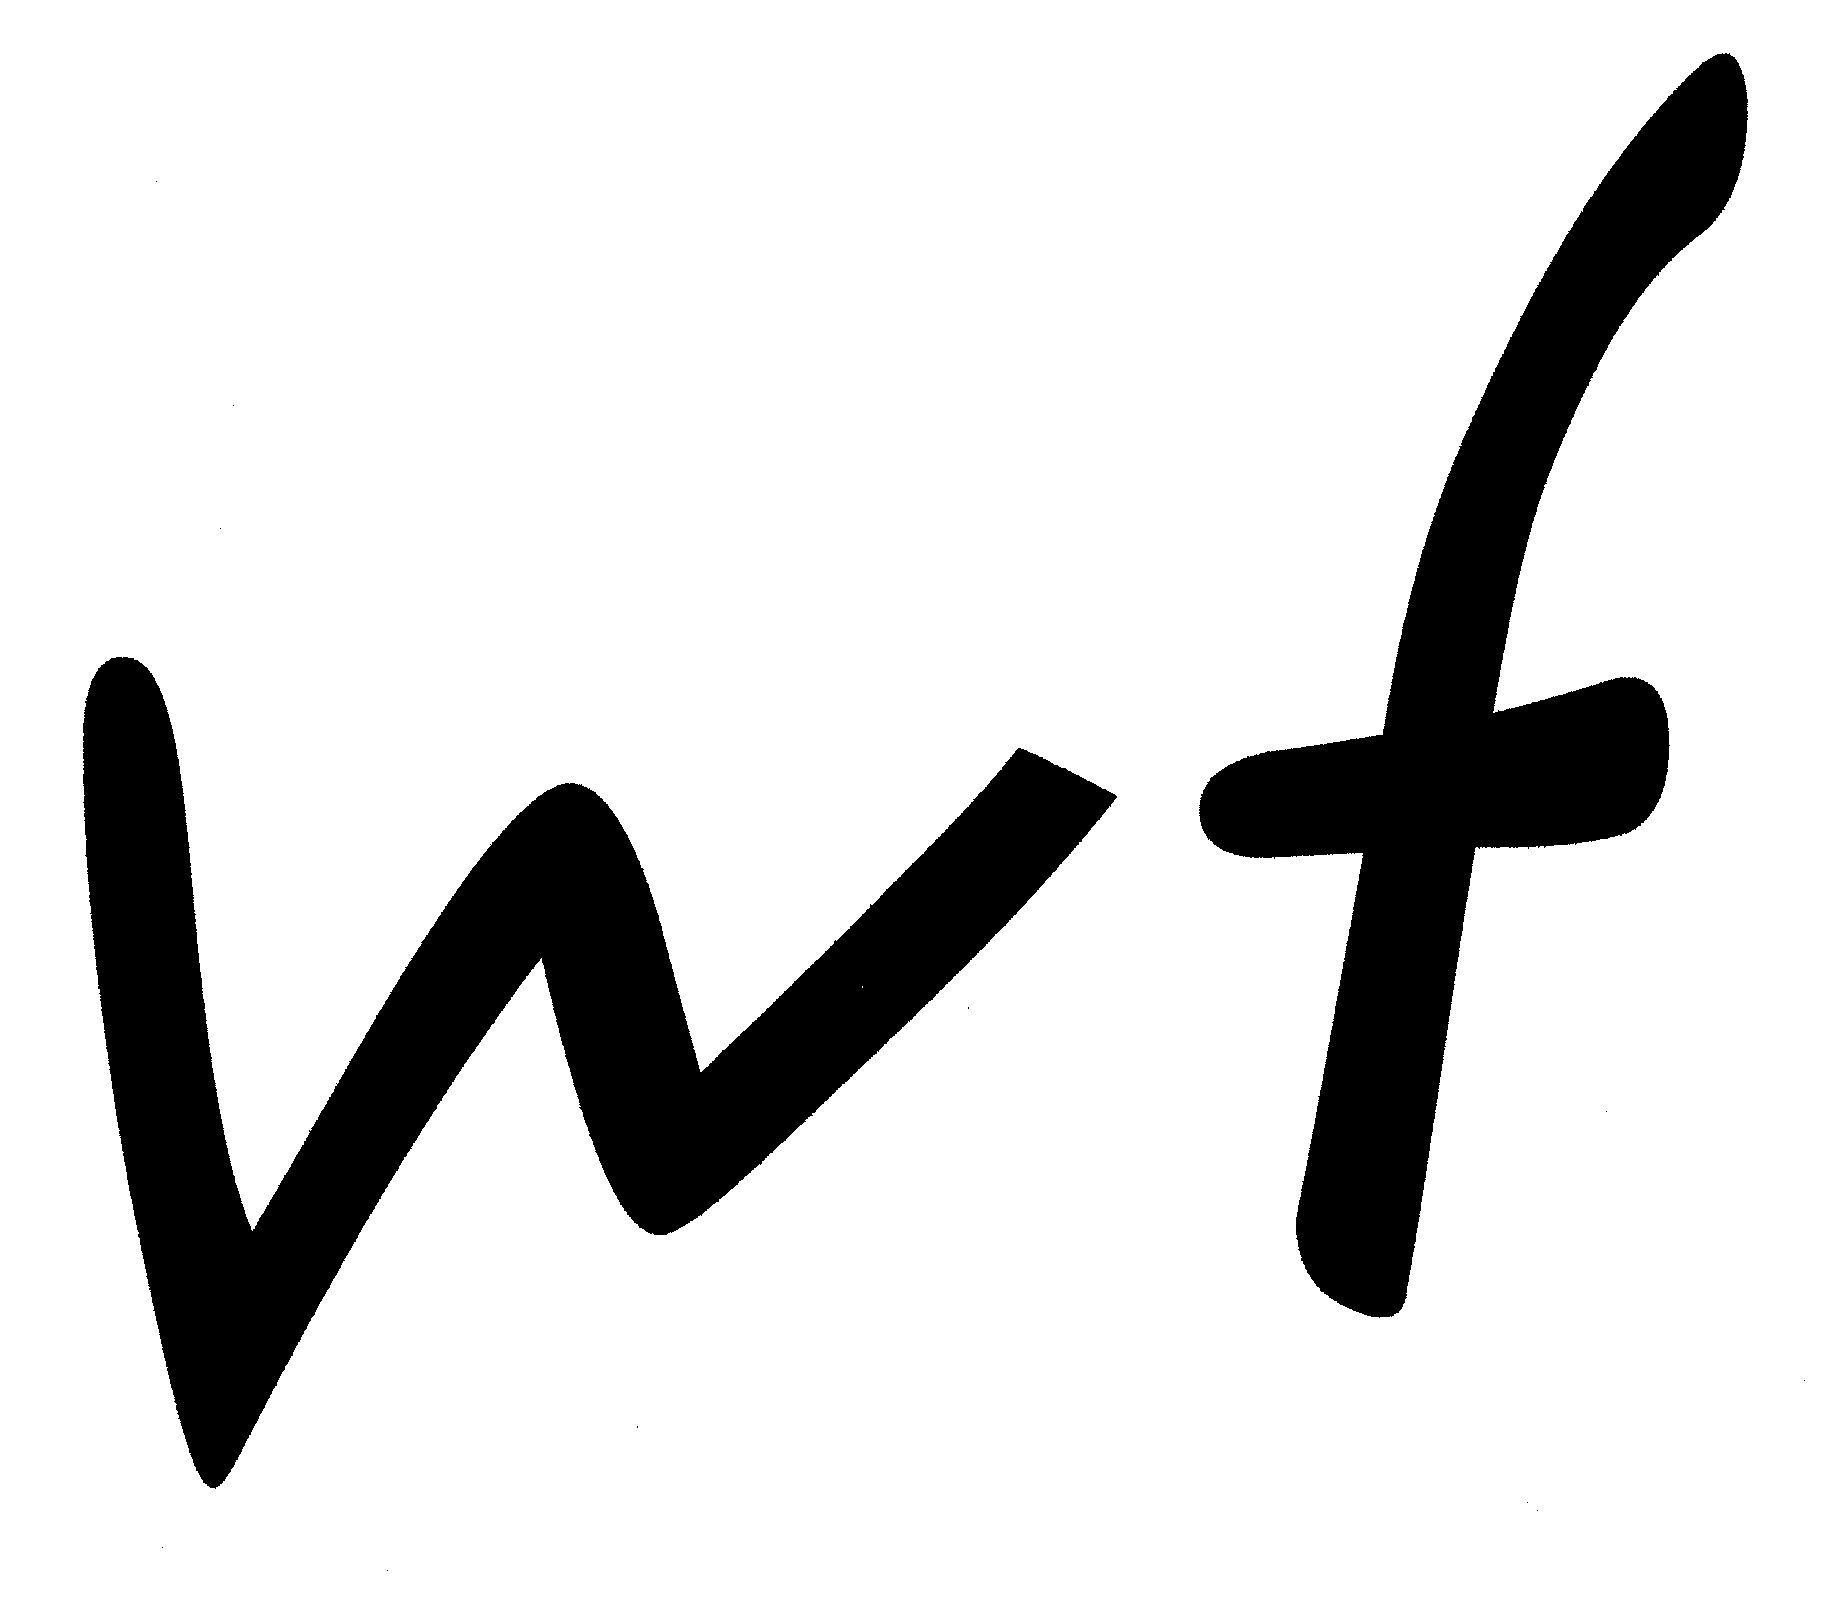 WF Logo - The WF logo